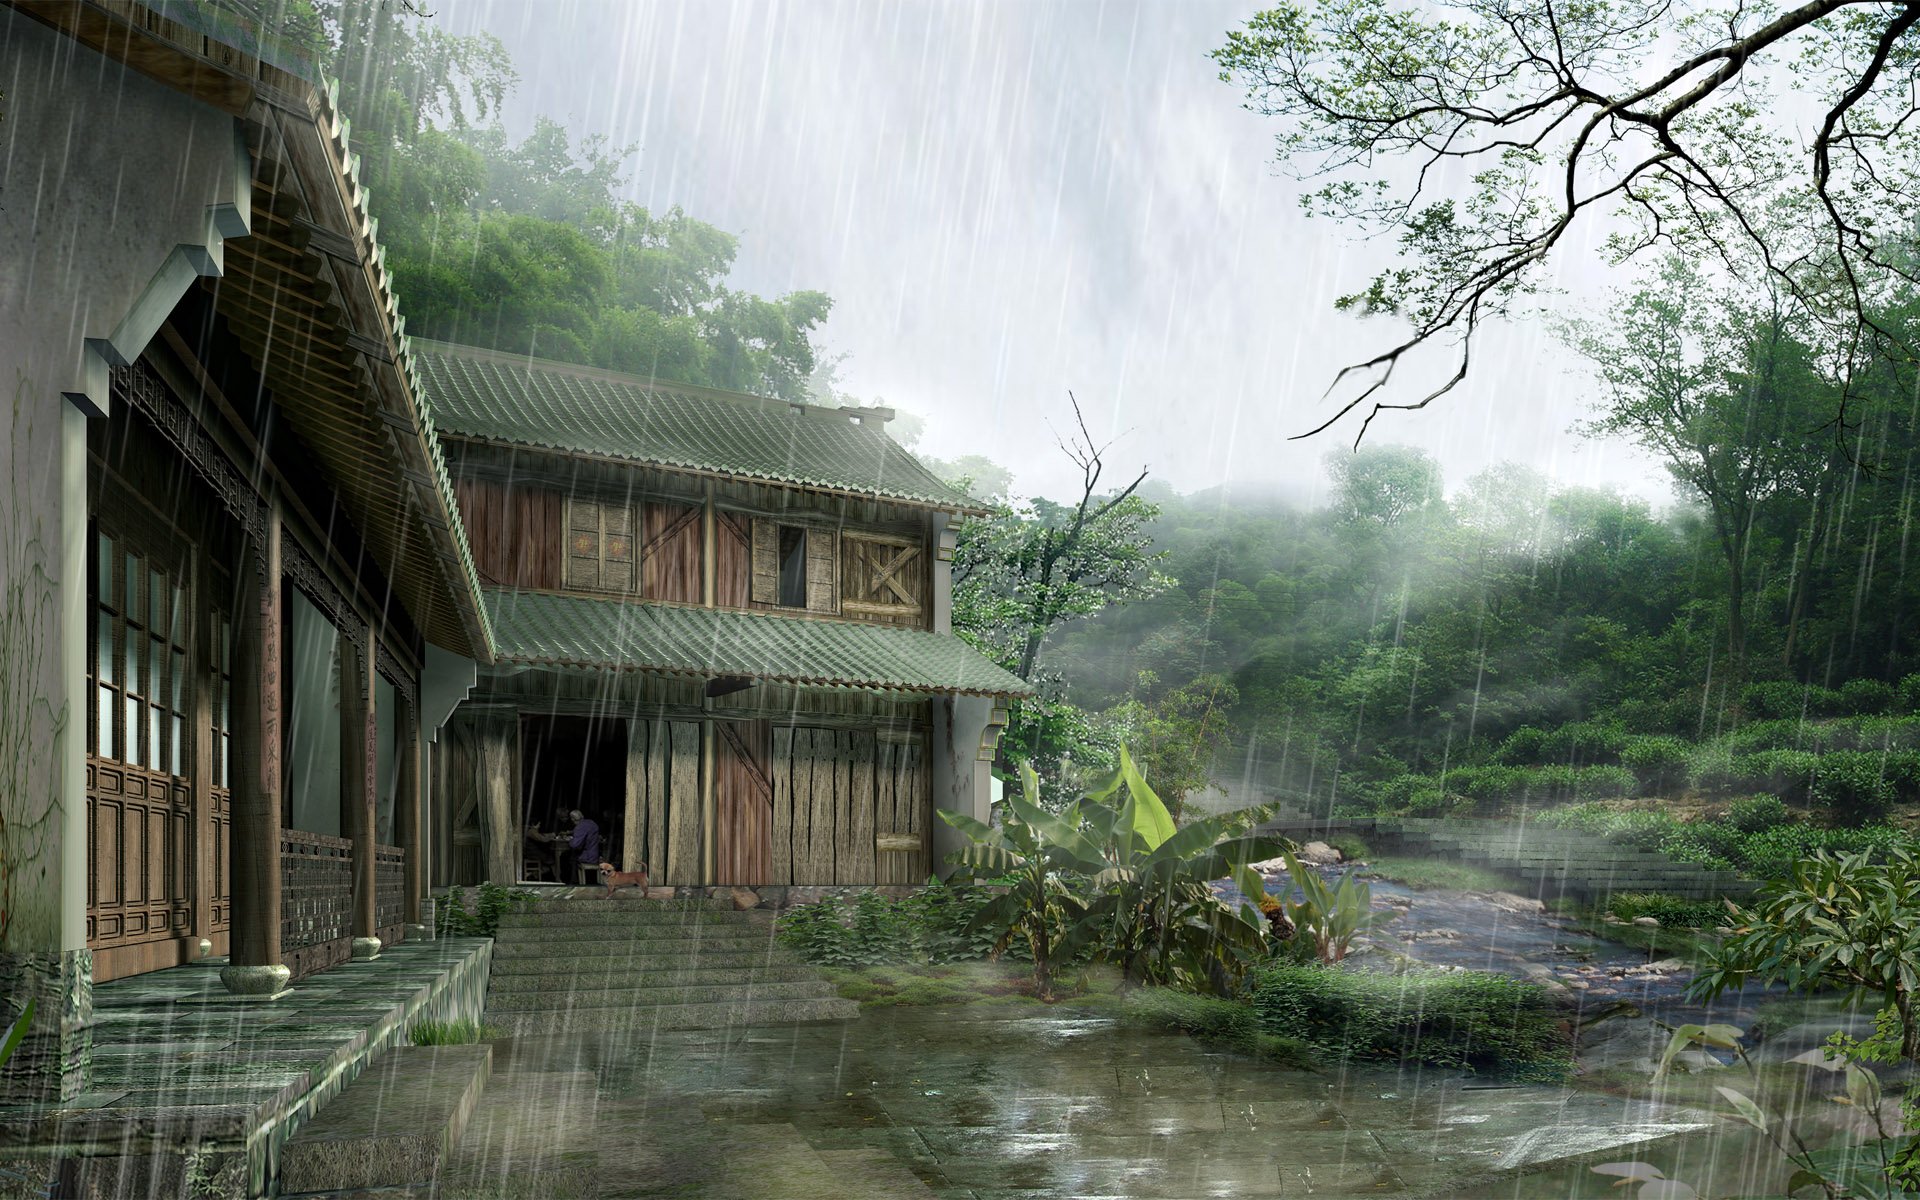 Домик в джунглях. Пейзаж китайской деревни. Китайский домик в лесу. Дождь в джунглях деревня.